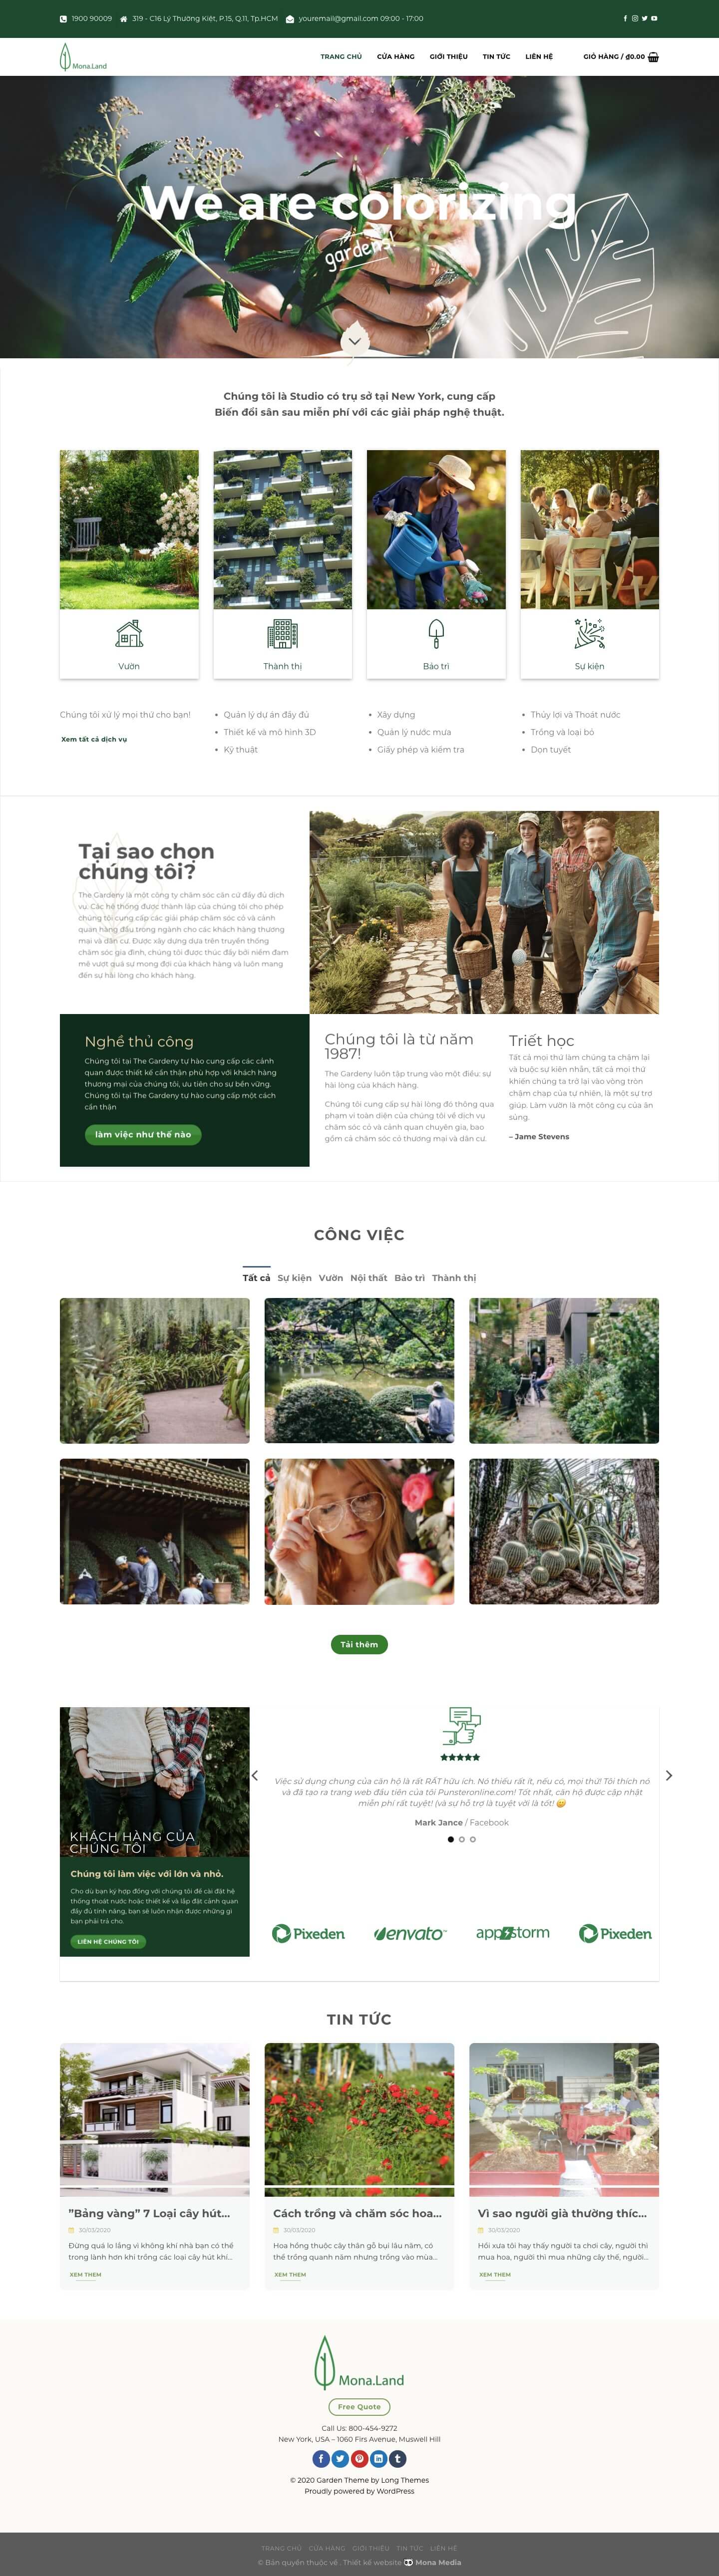 Mẫu website giới thiệu dịch vụ giải pháp làm vườn giao diện 